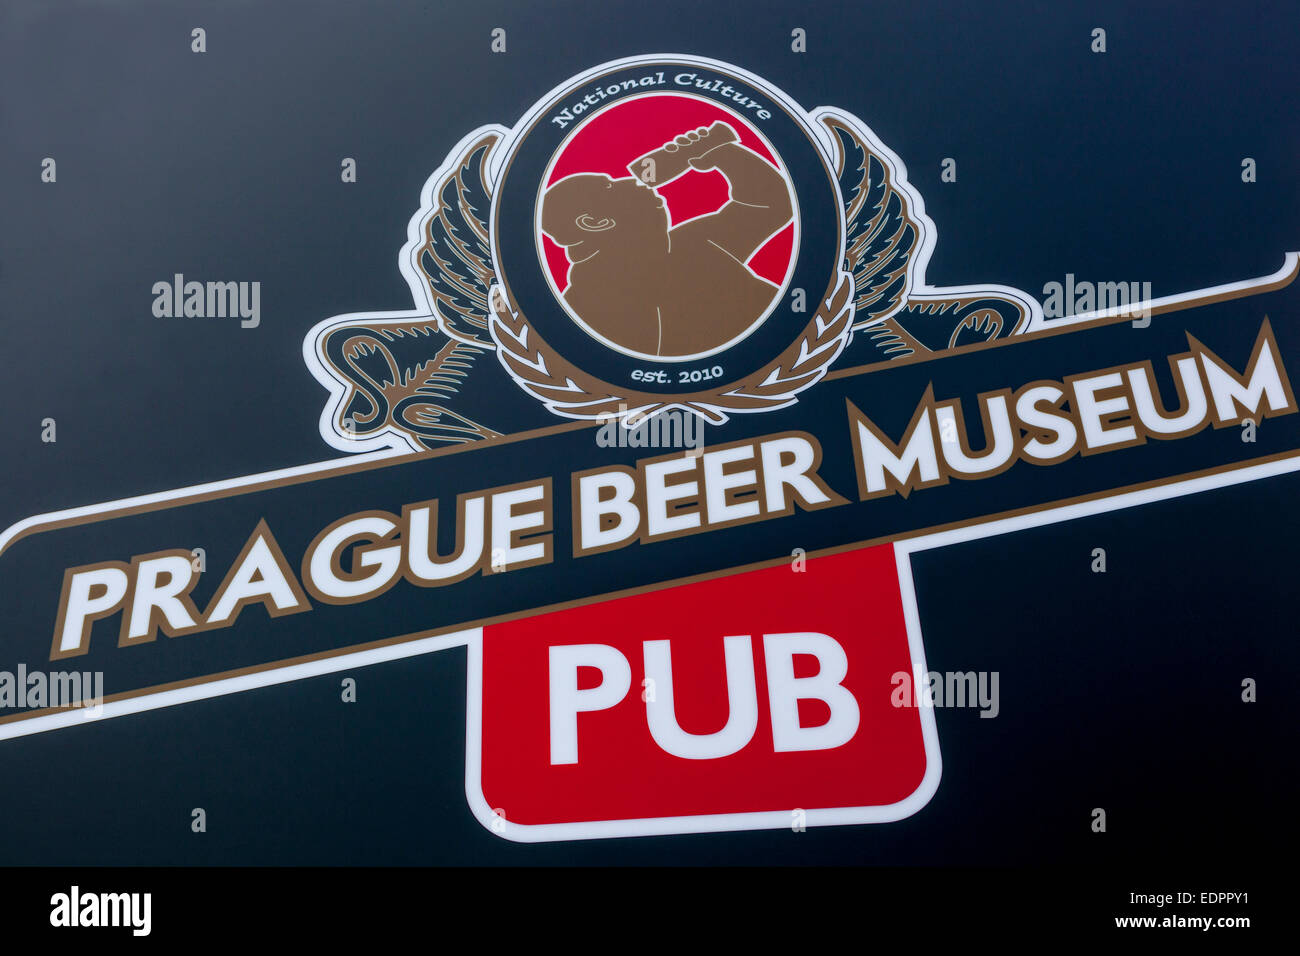 Prague beer museum pub, unique pub sign Czech Republic Stock Photo